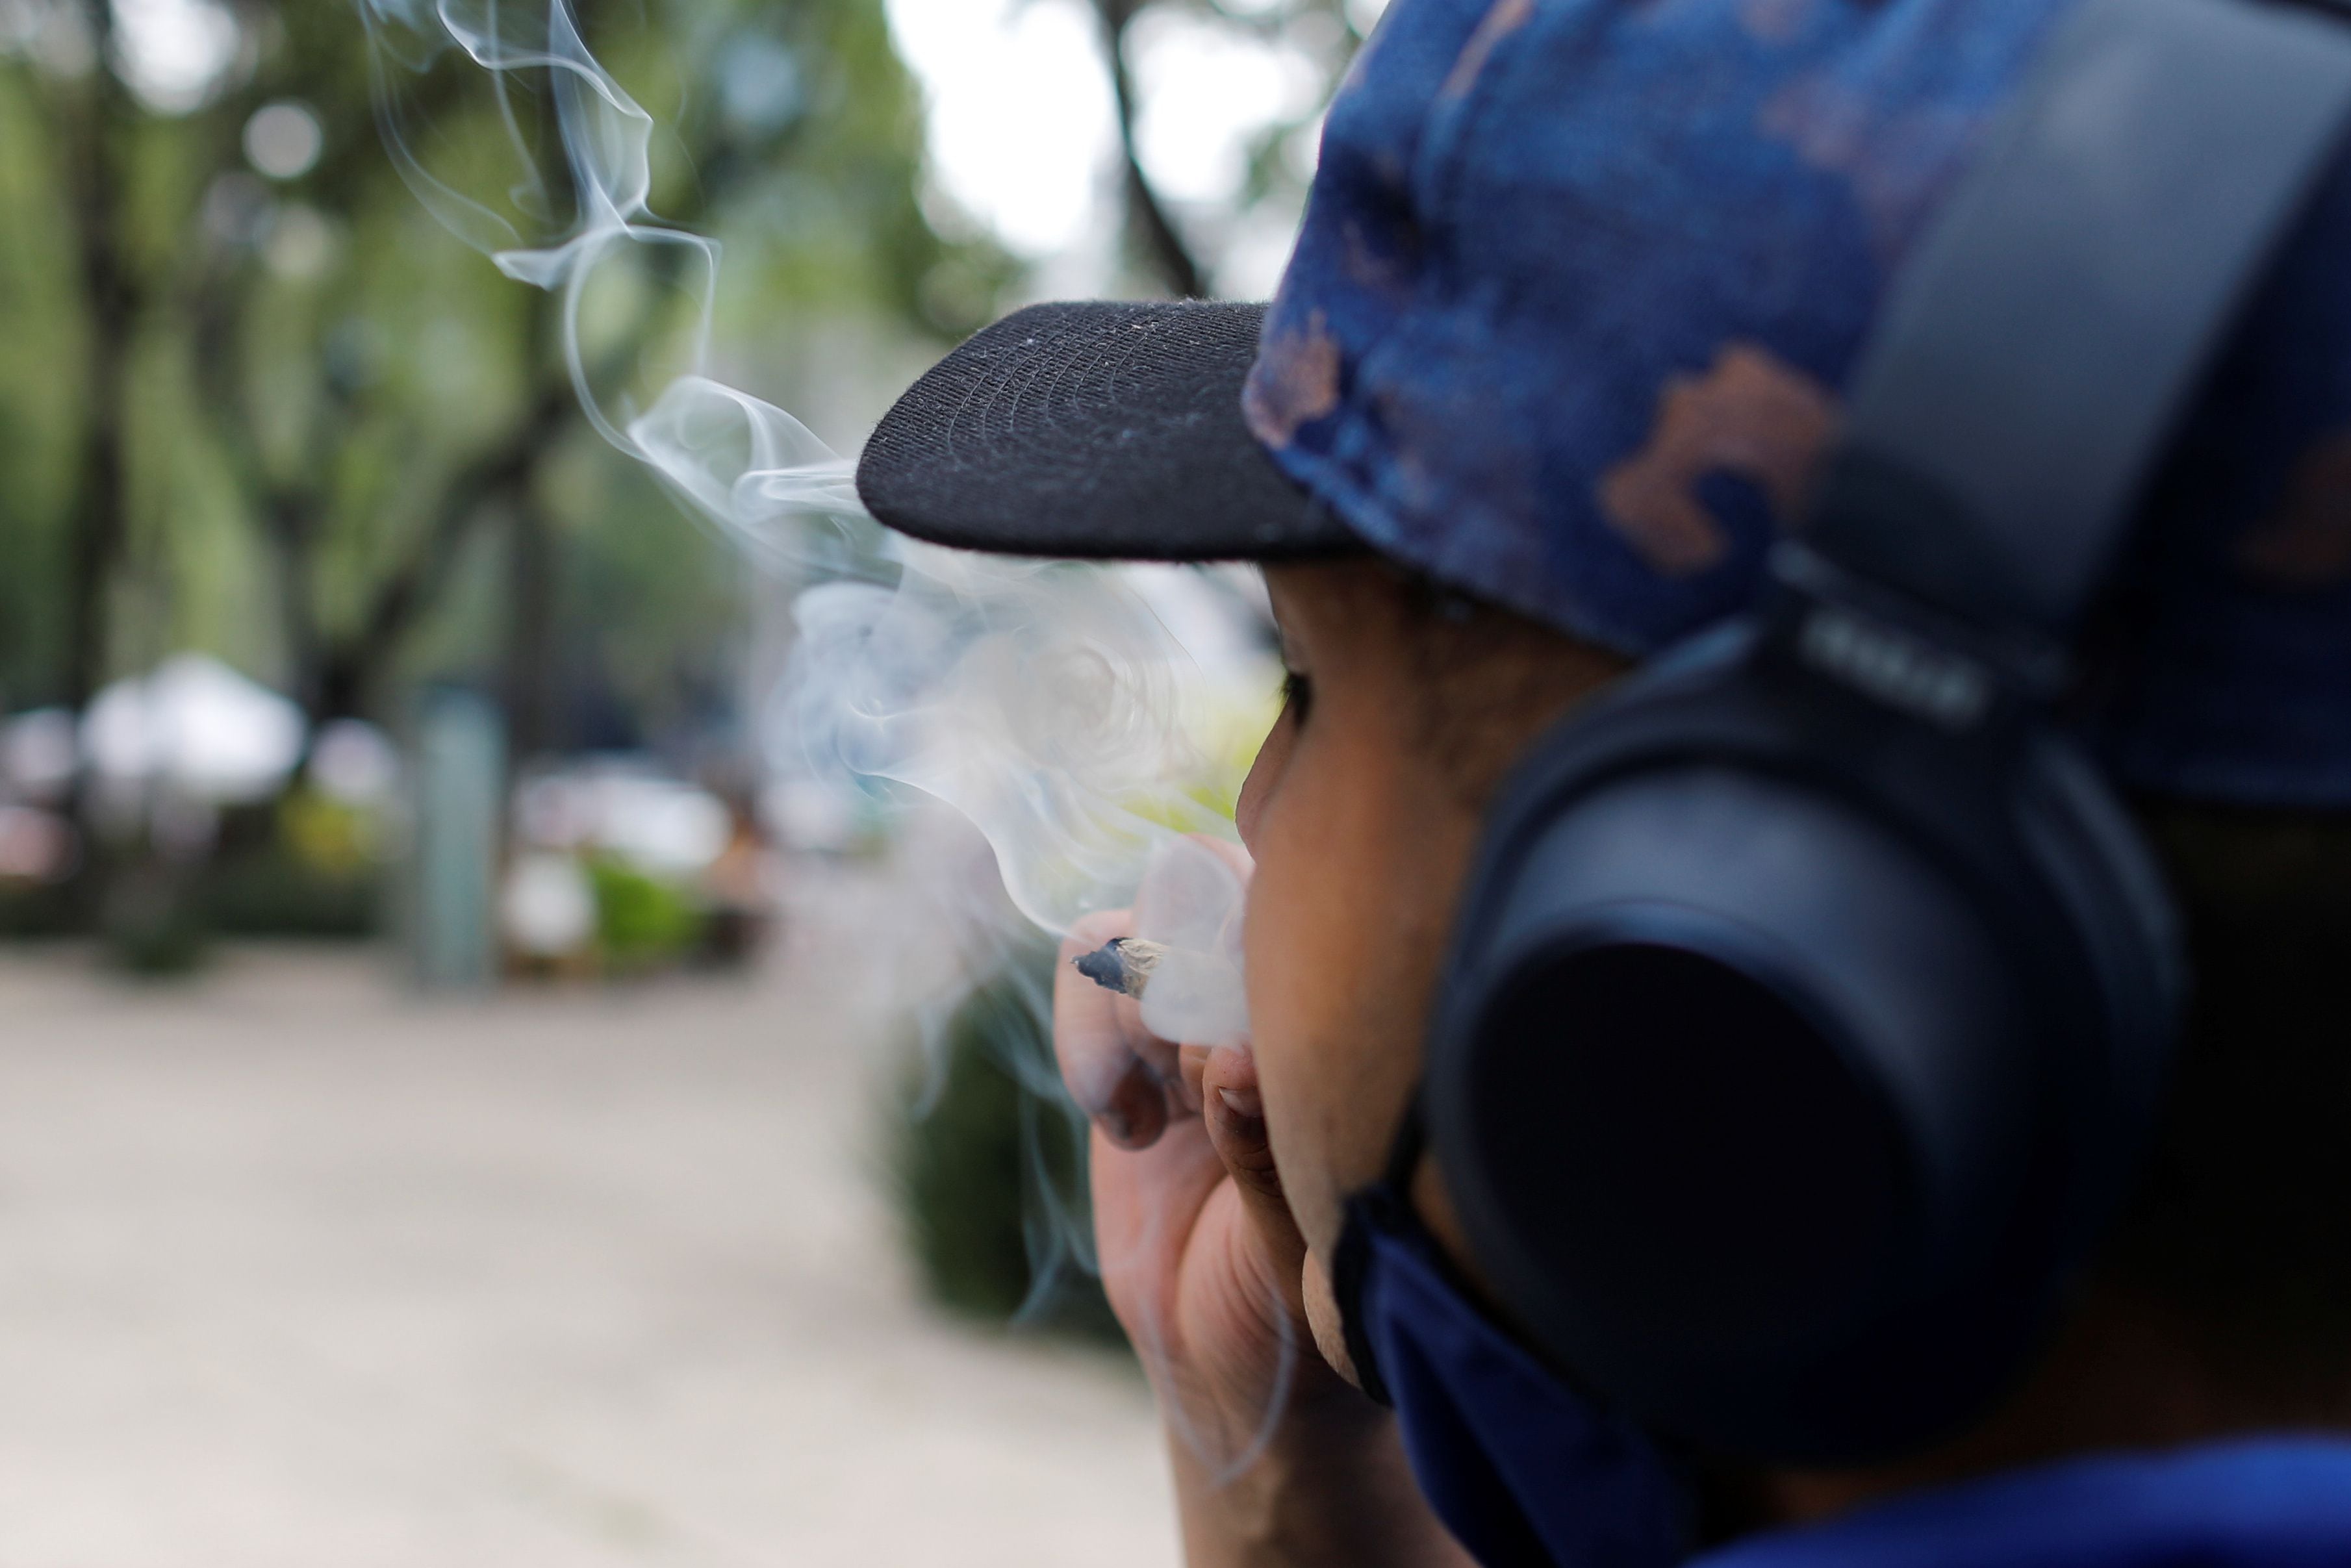 Las personas menores de 18 años no tendrán acceso al cannabis adulto (Foto: Carlos Jasso/Reuters)